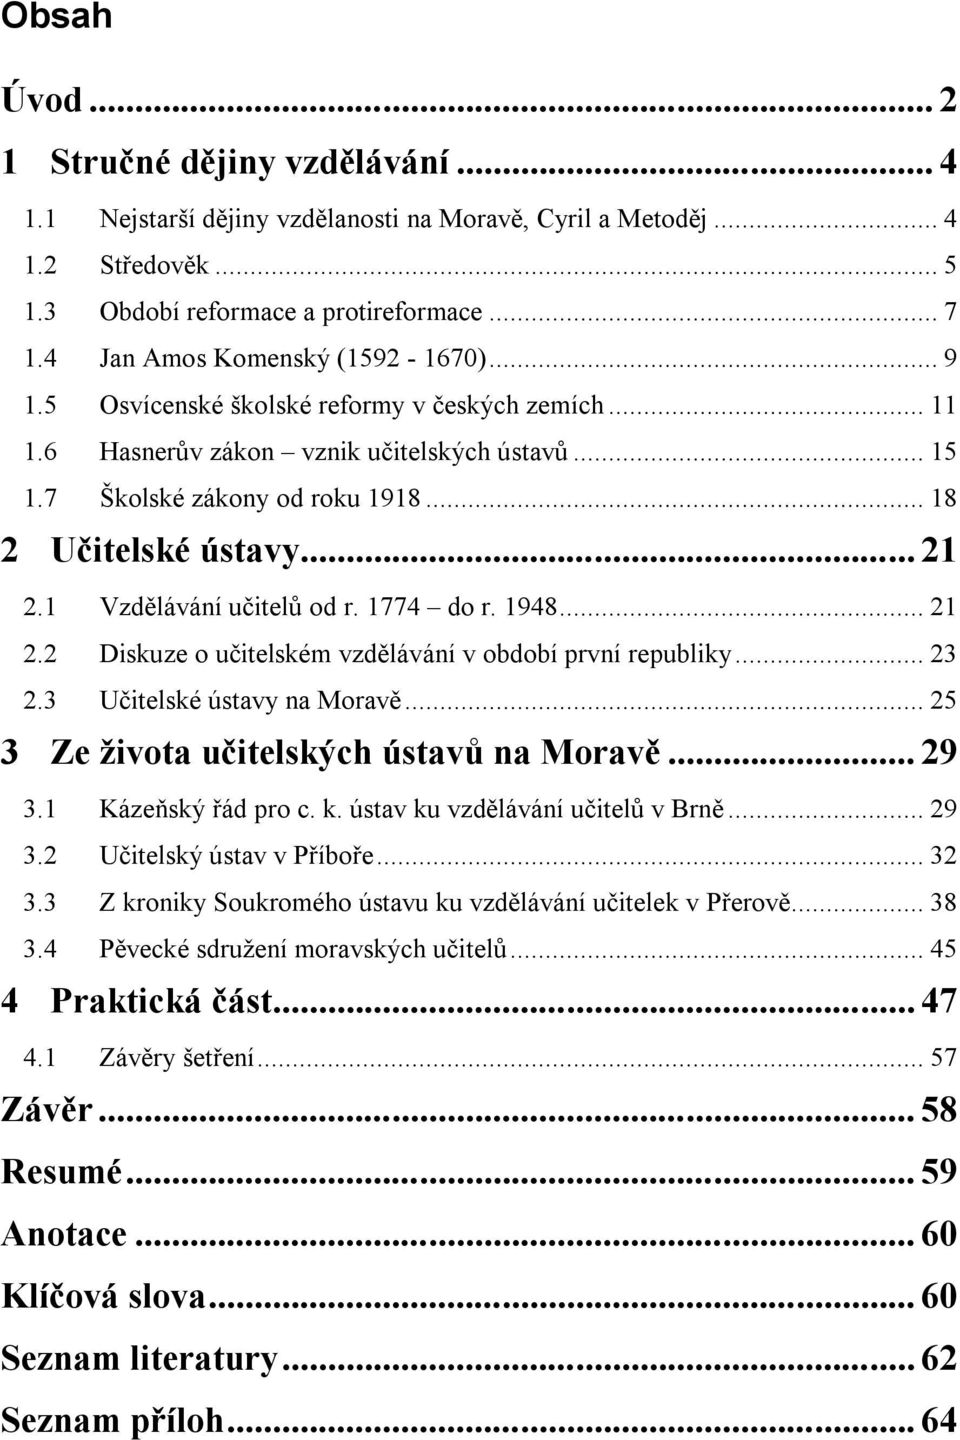 .. 21 2.1 Vzdělávání učitelů od r. 1774 do r. 1948... 21 2.2 Diskuze o učitelském vzdělávání v období první republiky... 23 2.3 Učitelské ústavy na Moravě... 25 3 Ze života učitelských ústavů na Moravě.